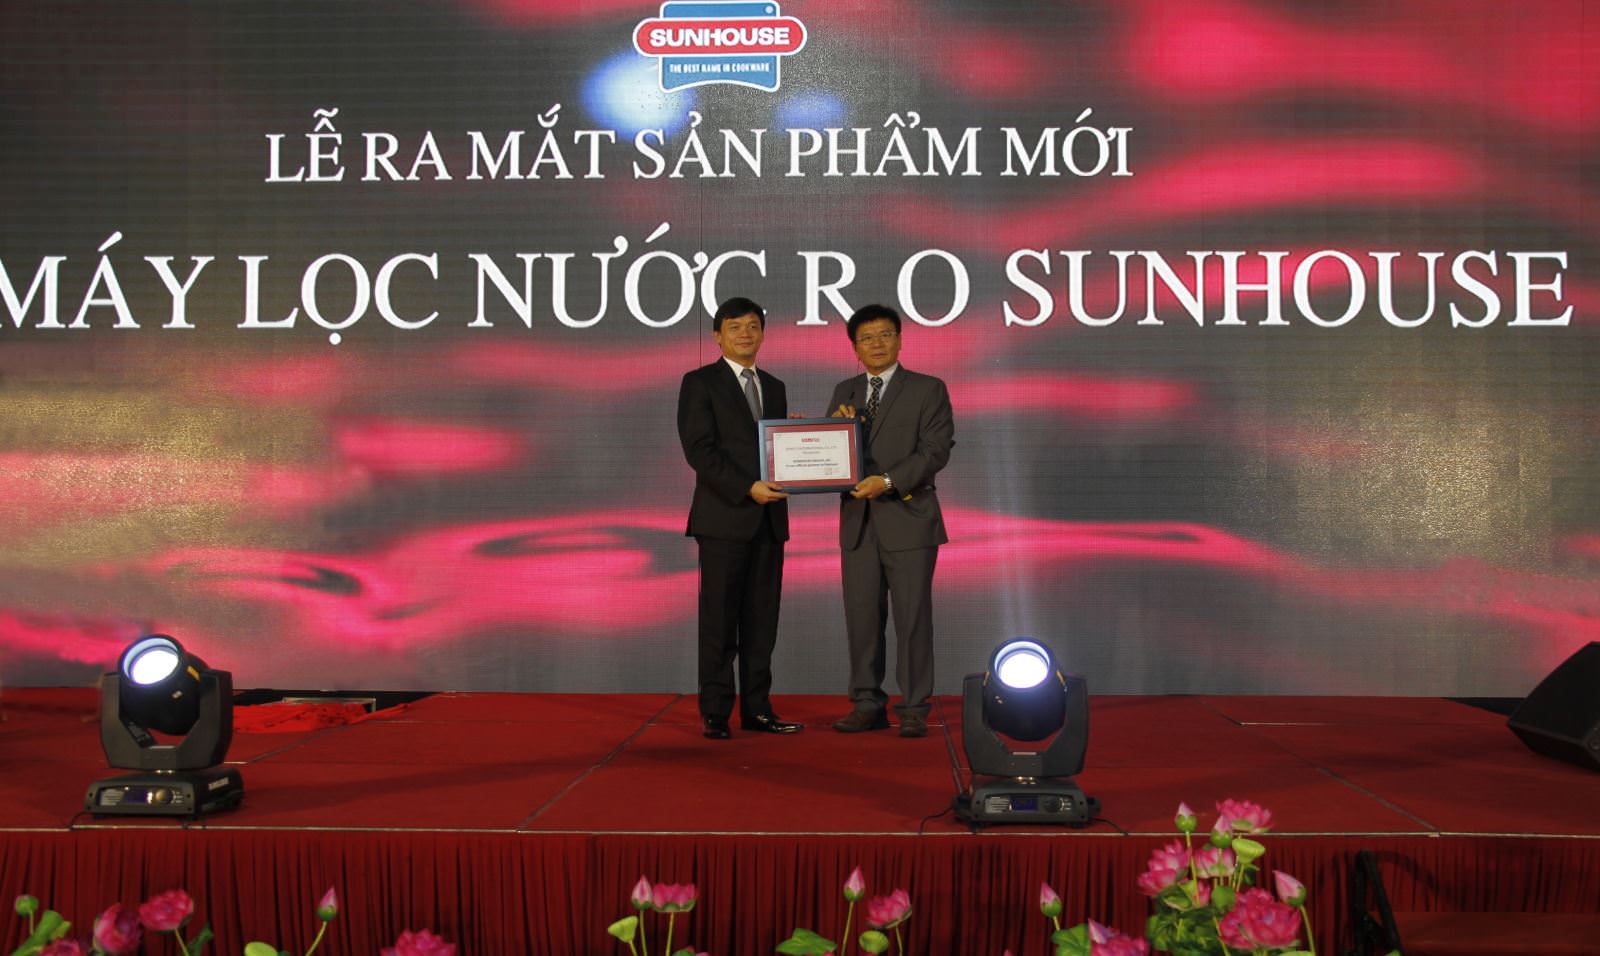 Tập đoàn Sunhouse tưng bừng ra mắt sản phẩm mới máy lọc nước R.O Sunhouse 9